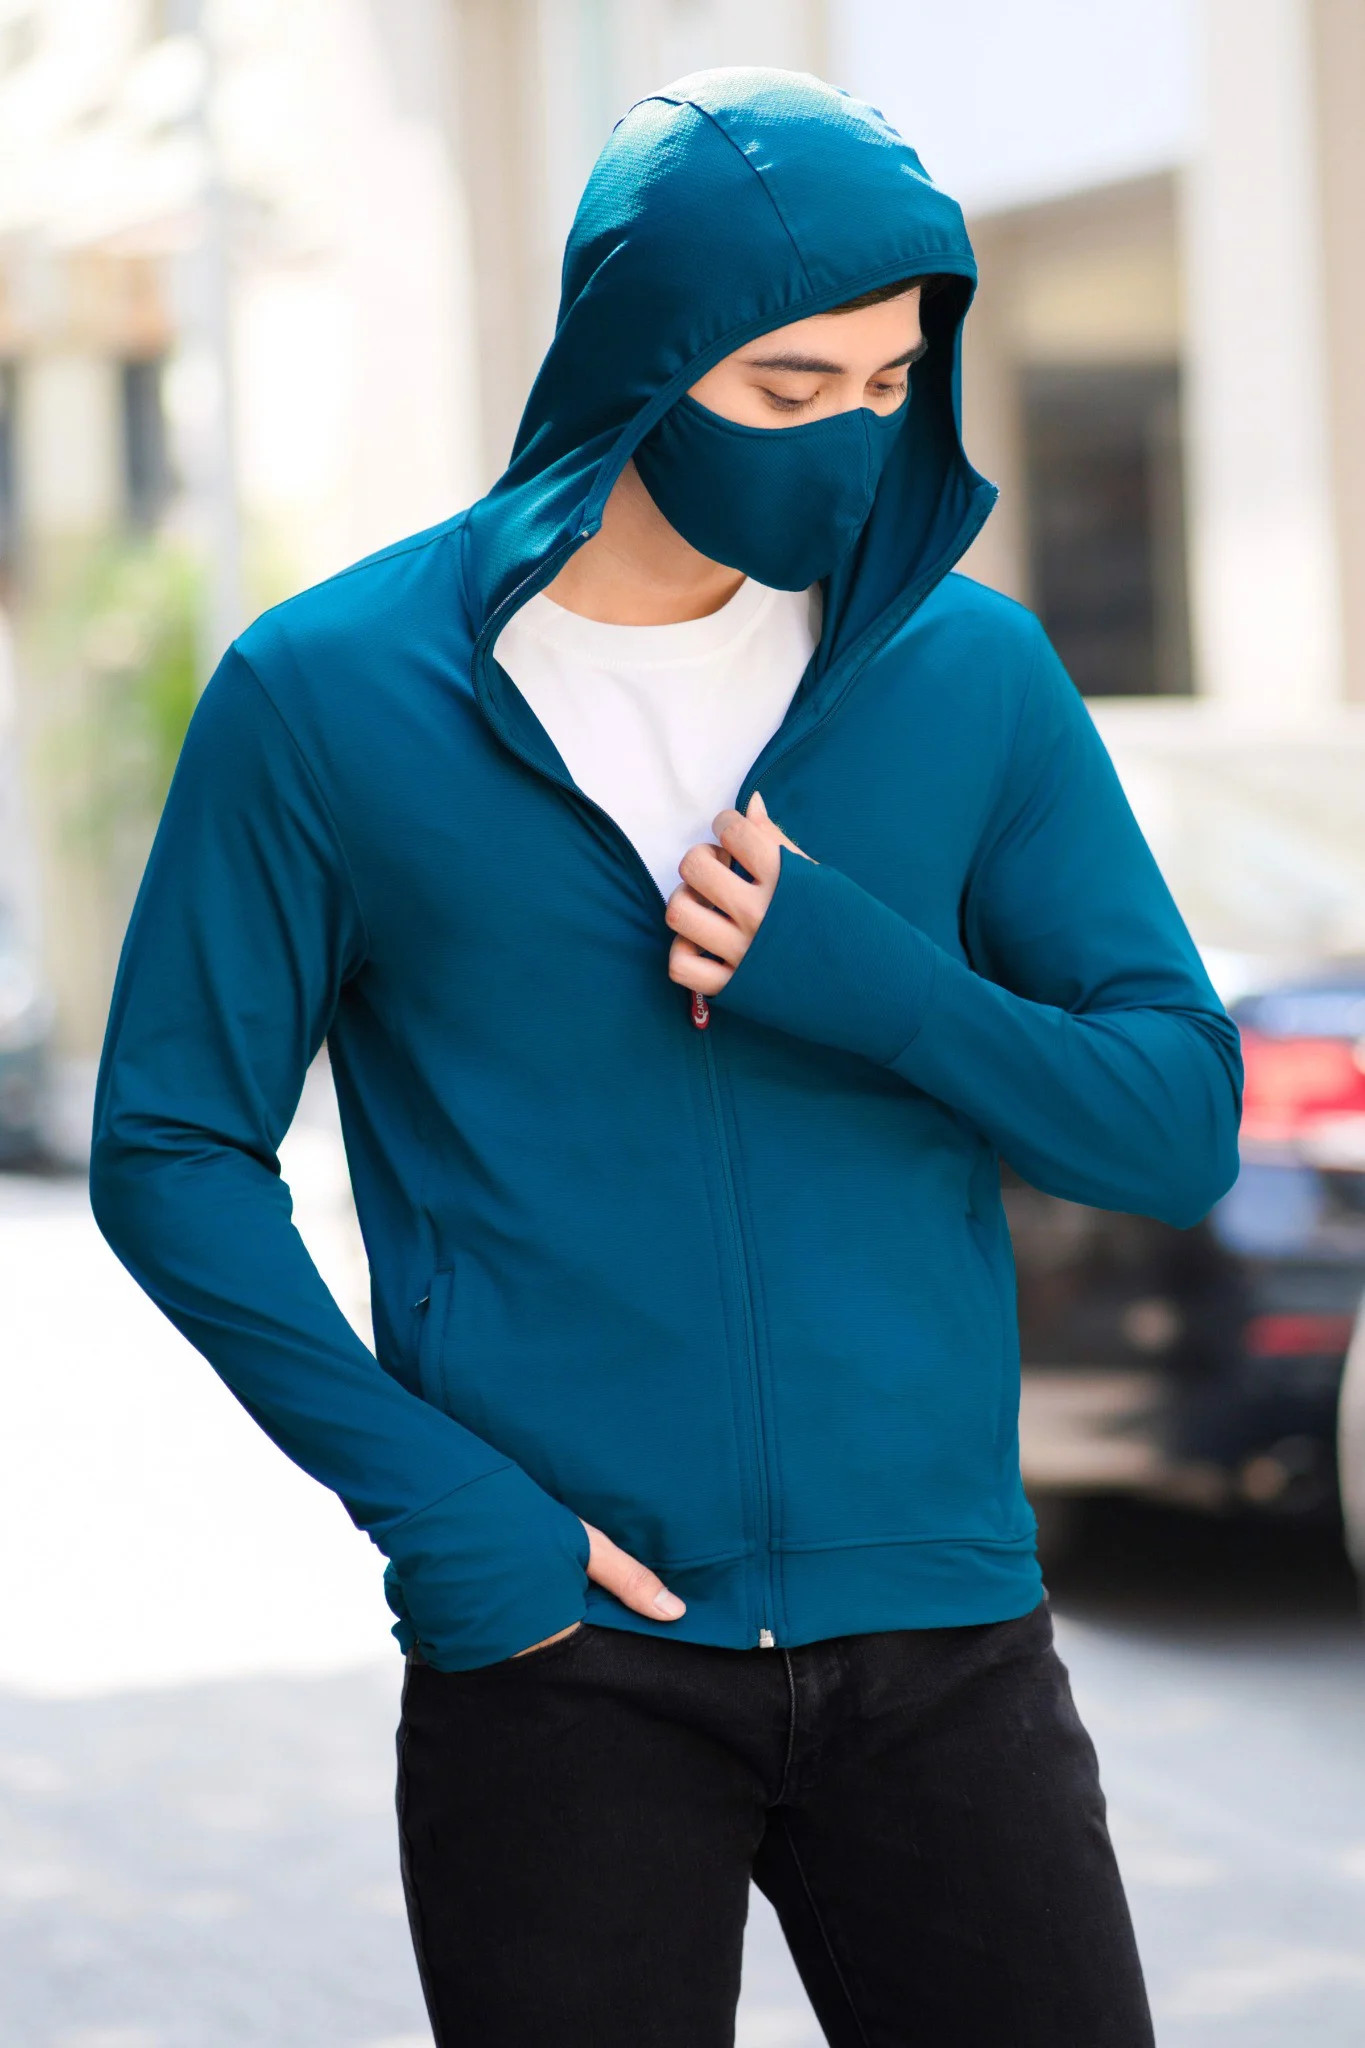 Áo khoác chống nắng nam 1 lớp Cardina, chất thun lạnh ngăn 97% tia UV